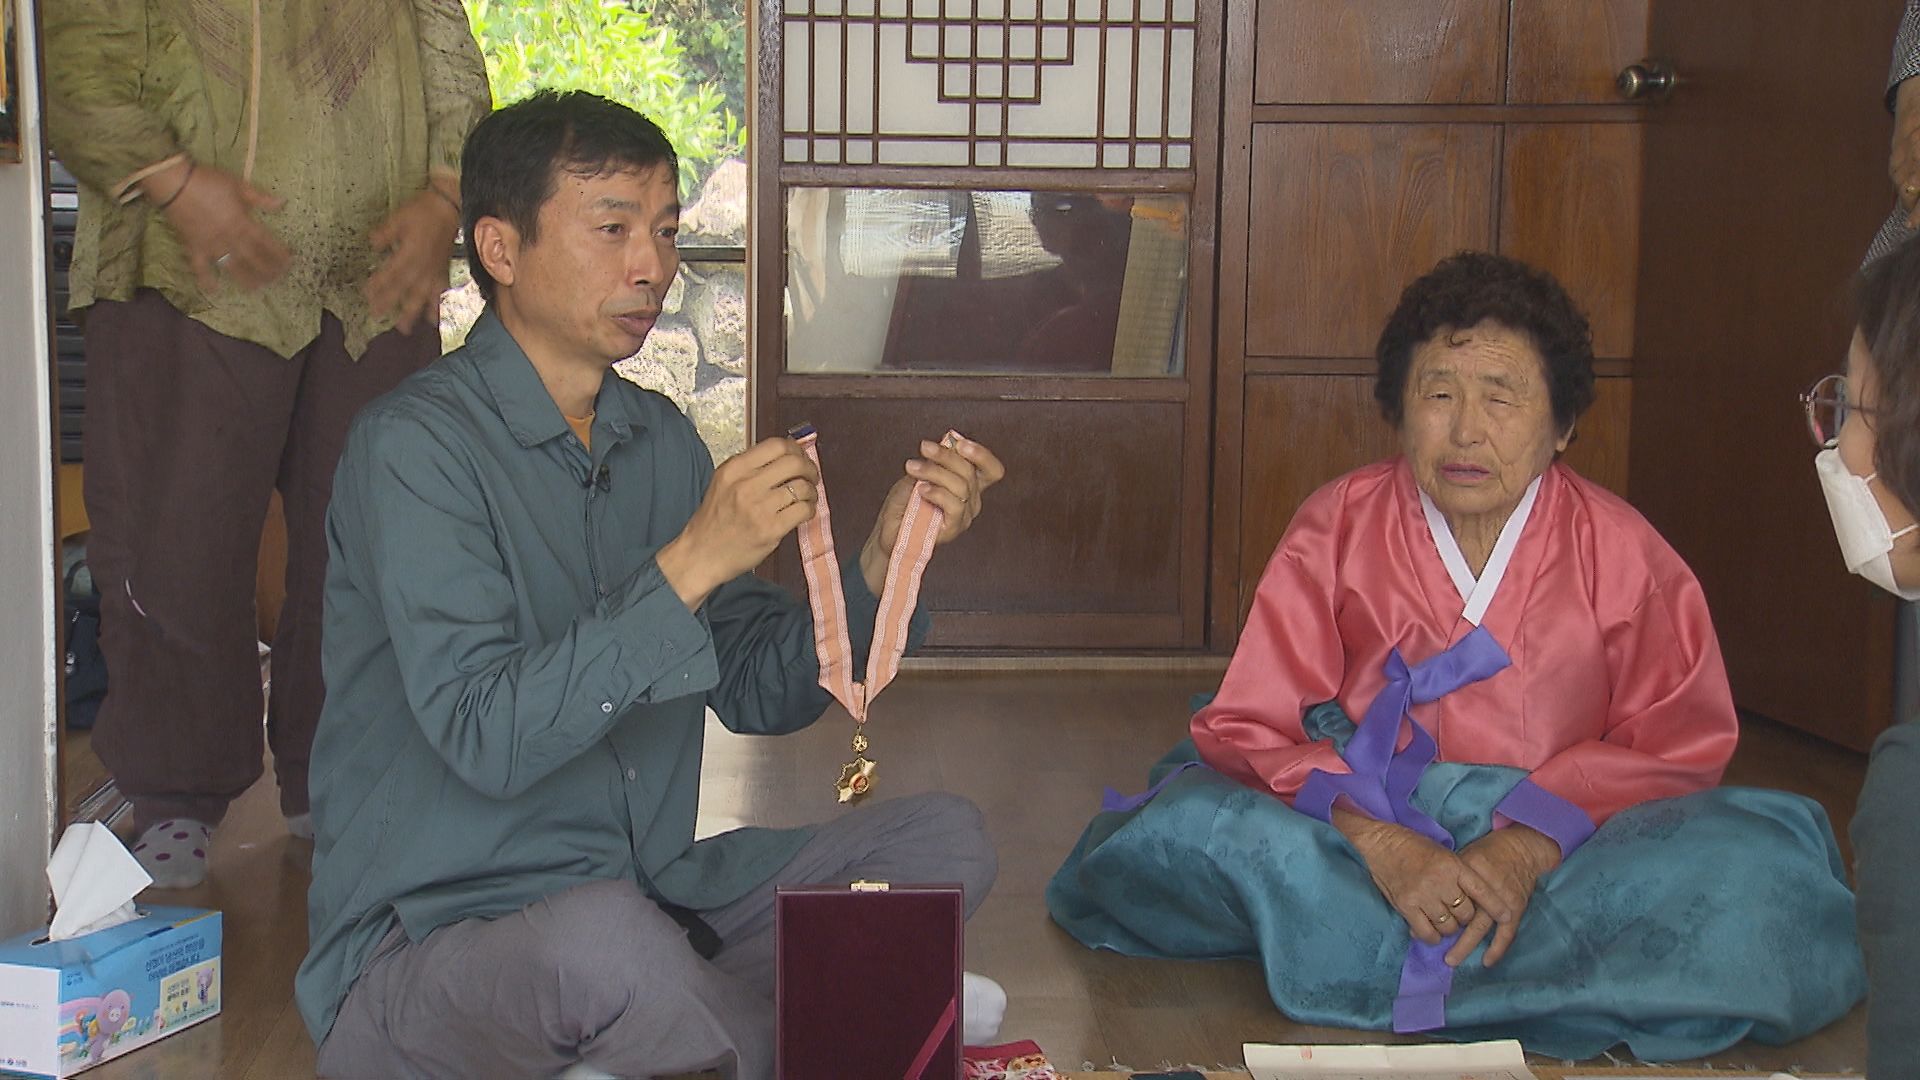 지난 24일 고(故) 현천수 이등상사의 아들 종철 씨가 70년 만에 받은 부친의 무공훈장을 들어보이고 있다.